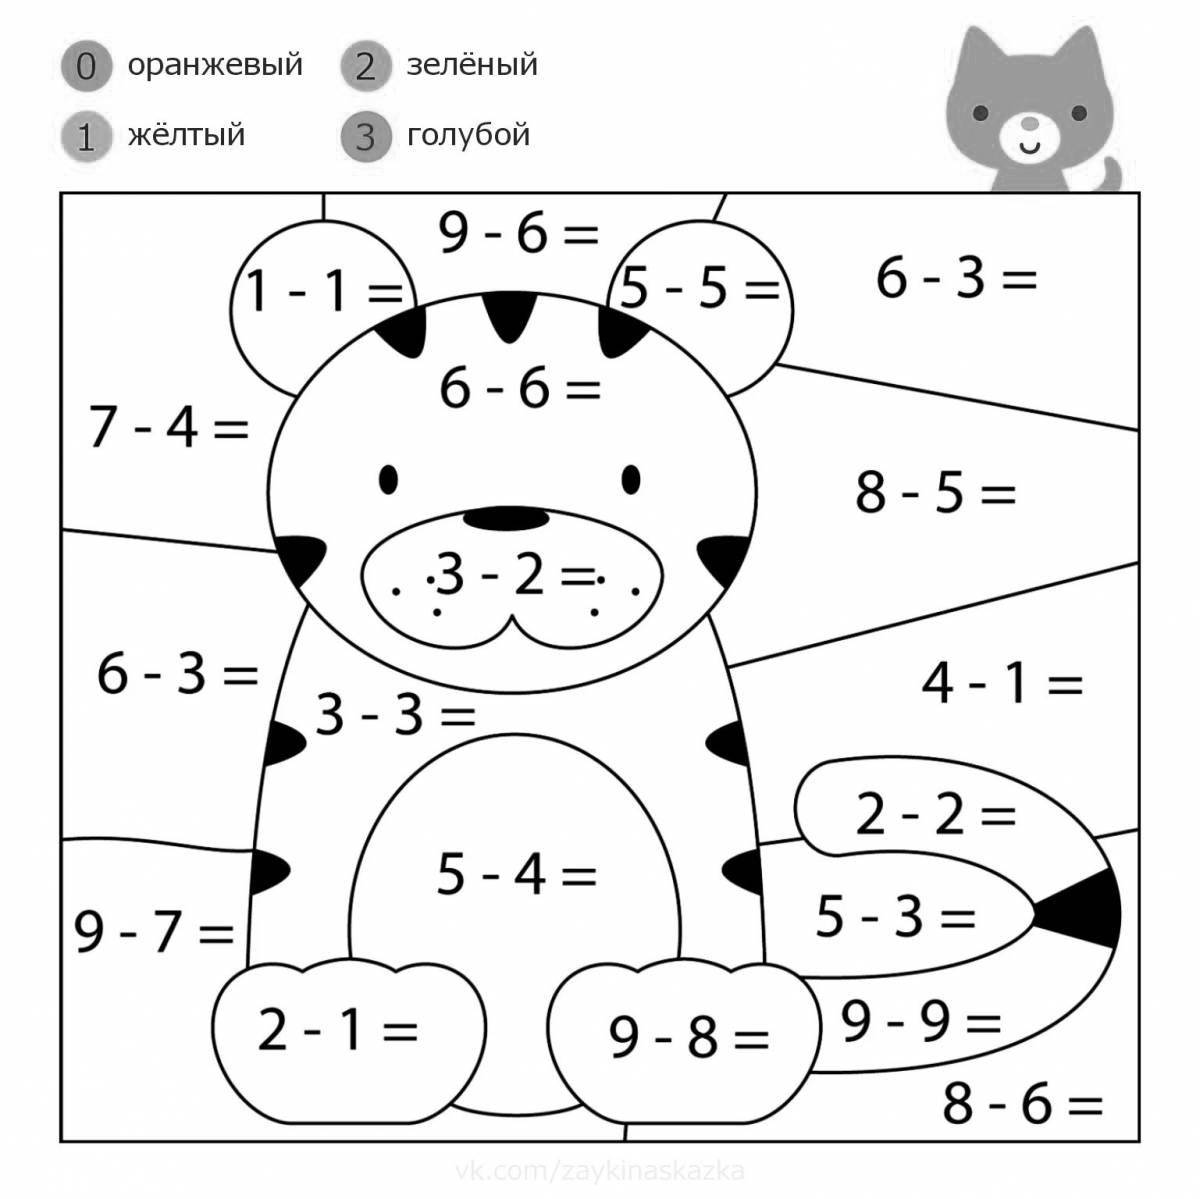 Математическая раскраска для детей 4-6 лет. Выполни задания, написанные на картинках